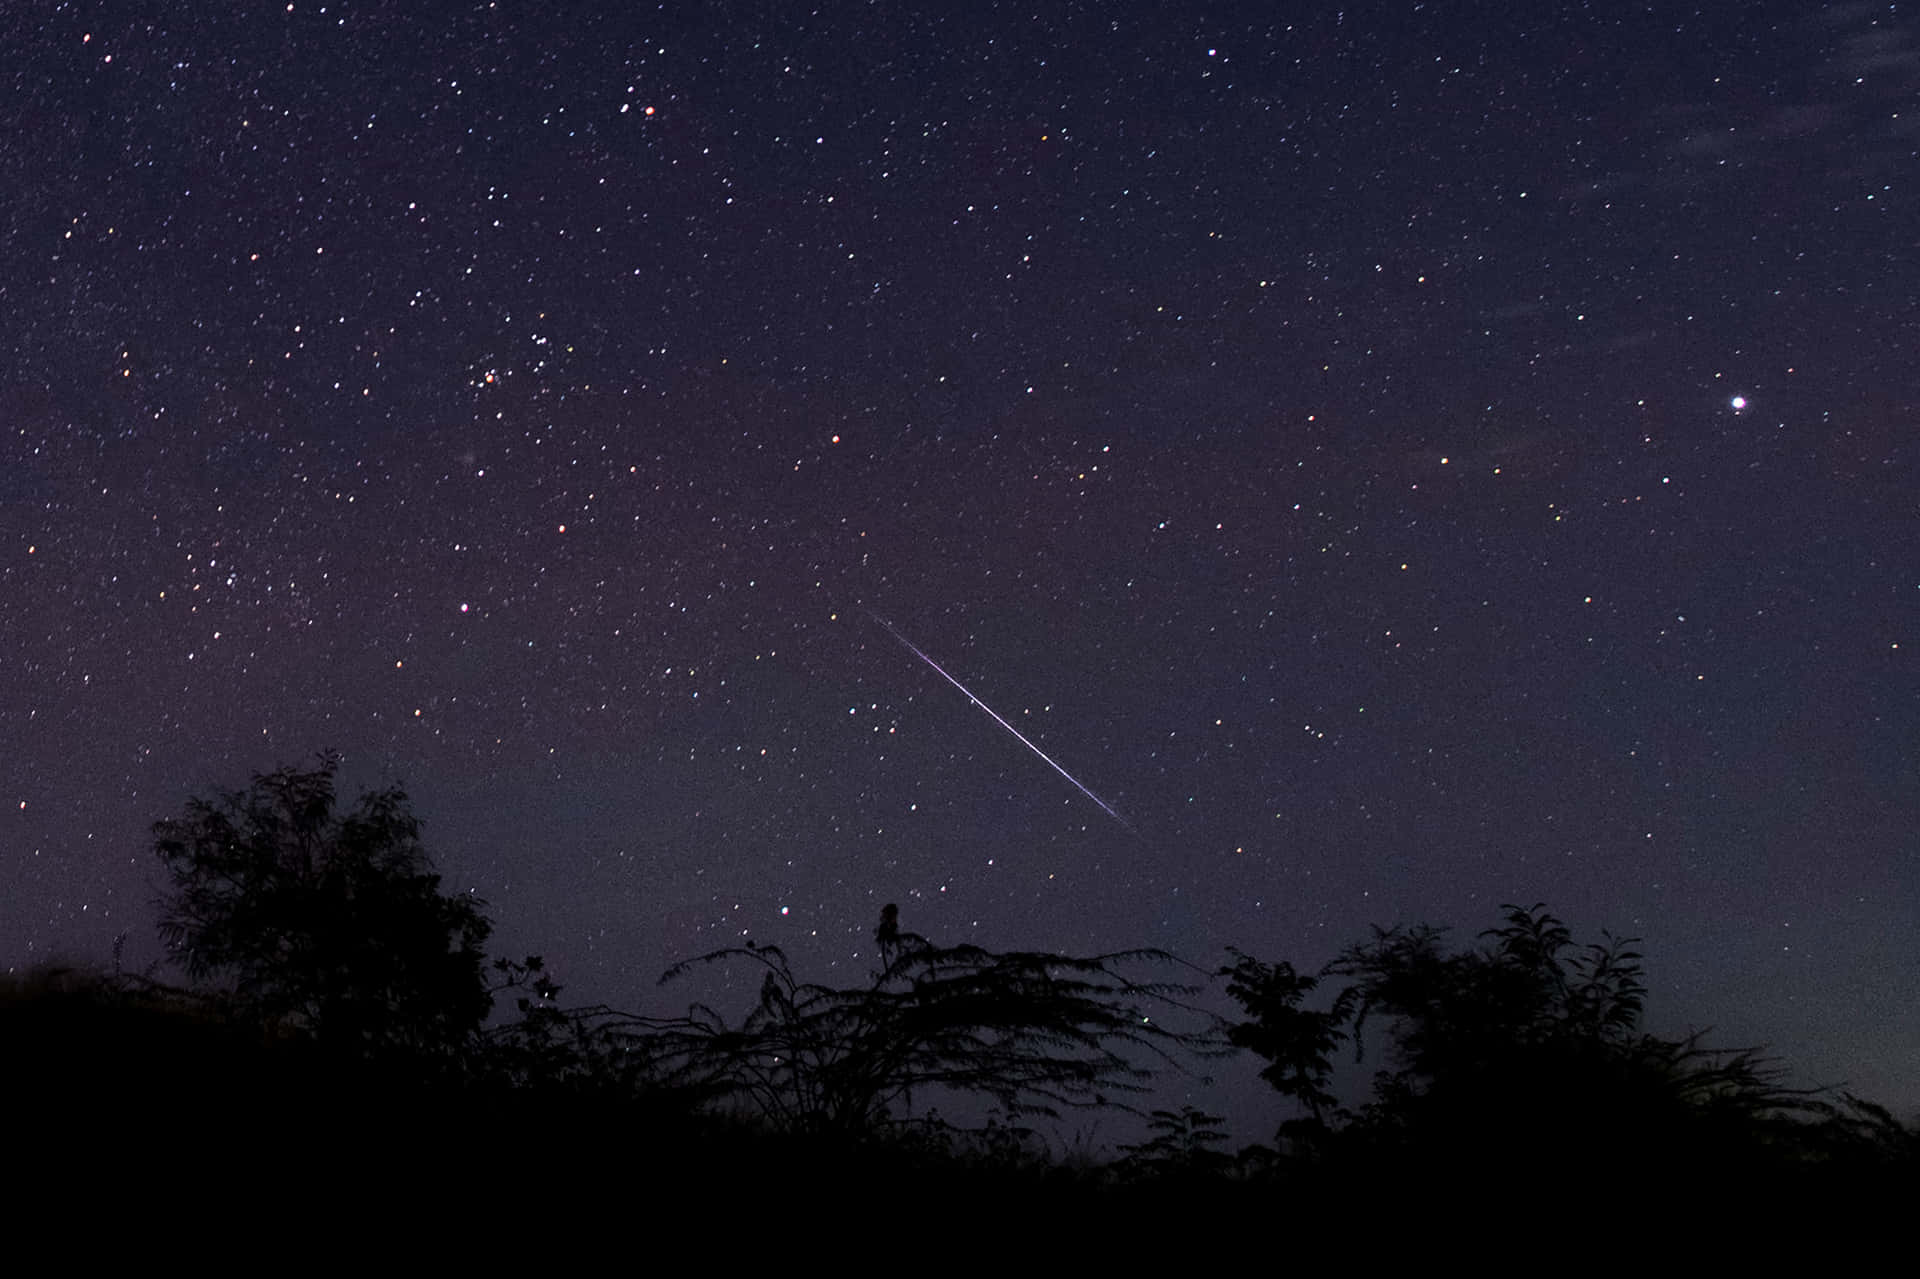 Meteor streaks across night sky